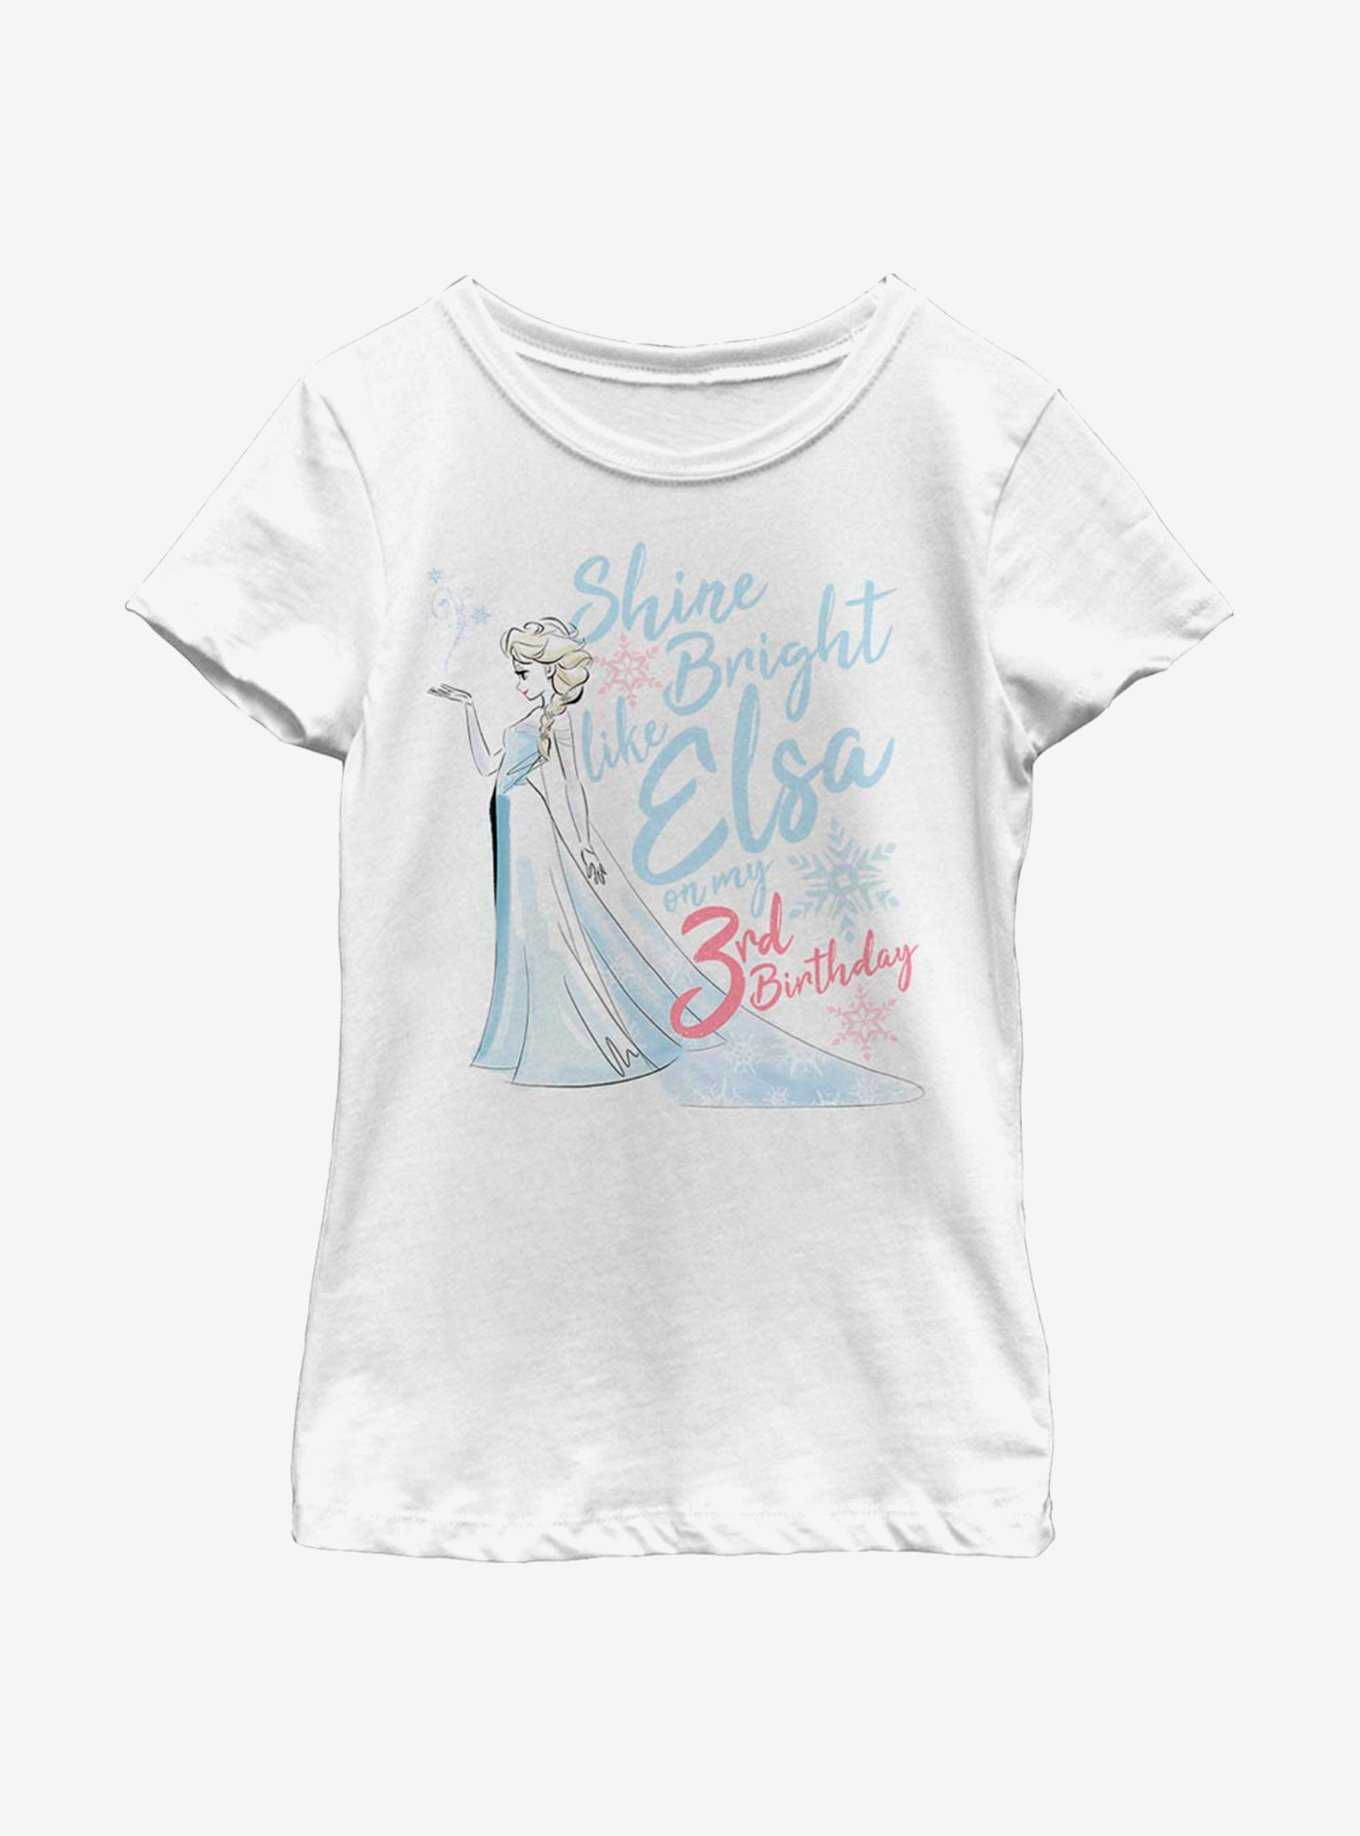 Disney Frozen Birthday Queen Three Youth Girls T-Shirt, , hi-res